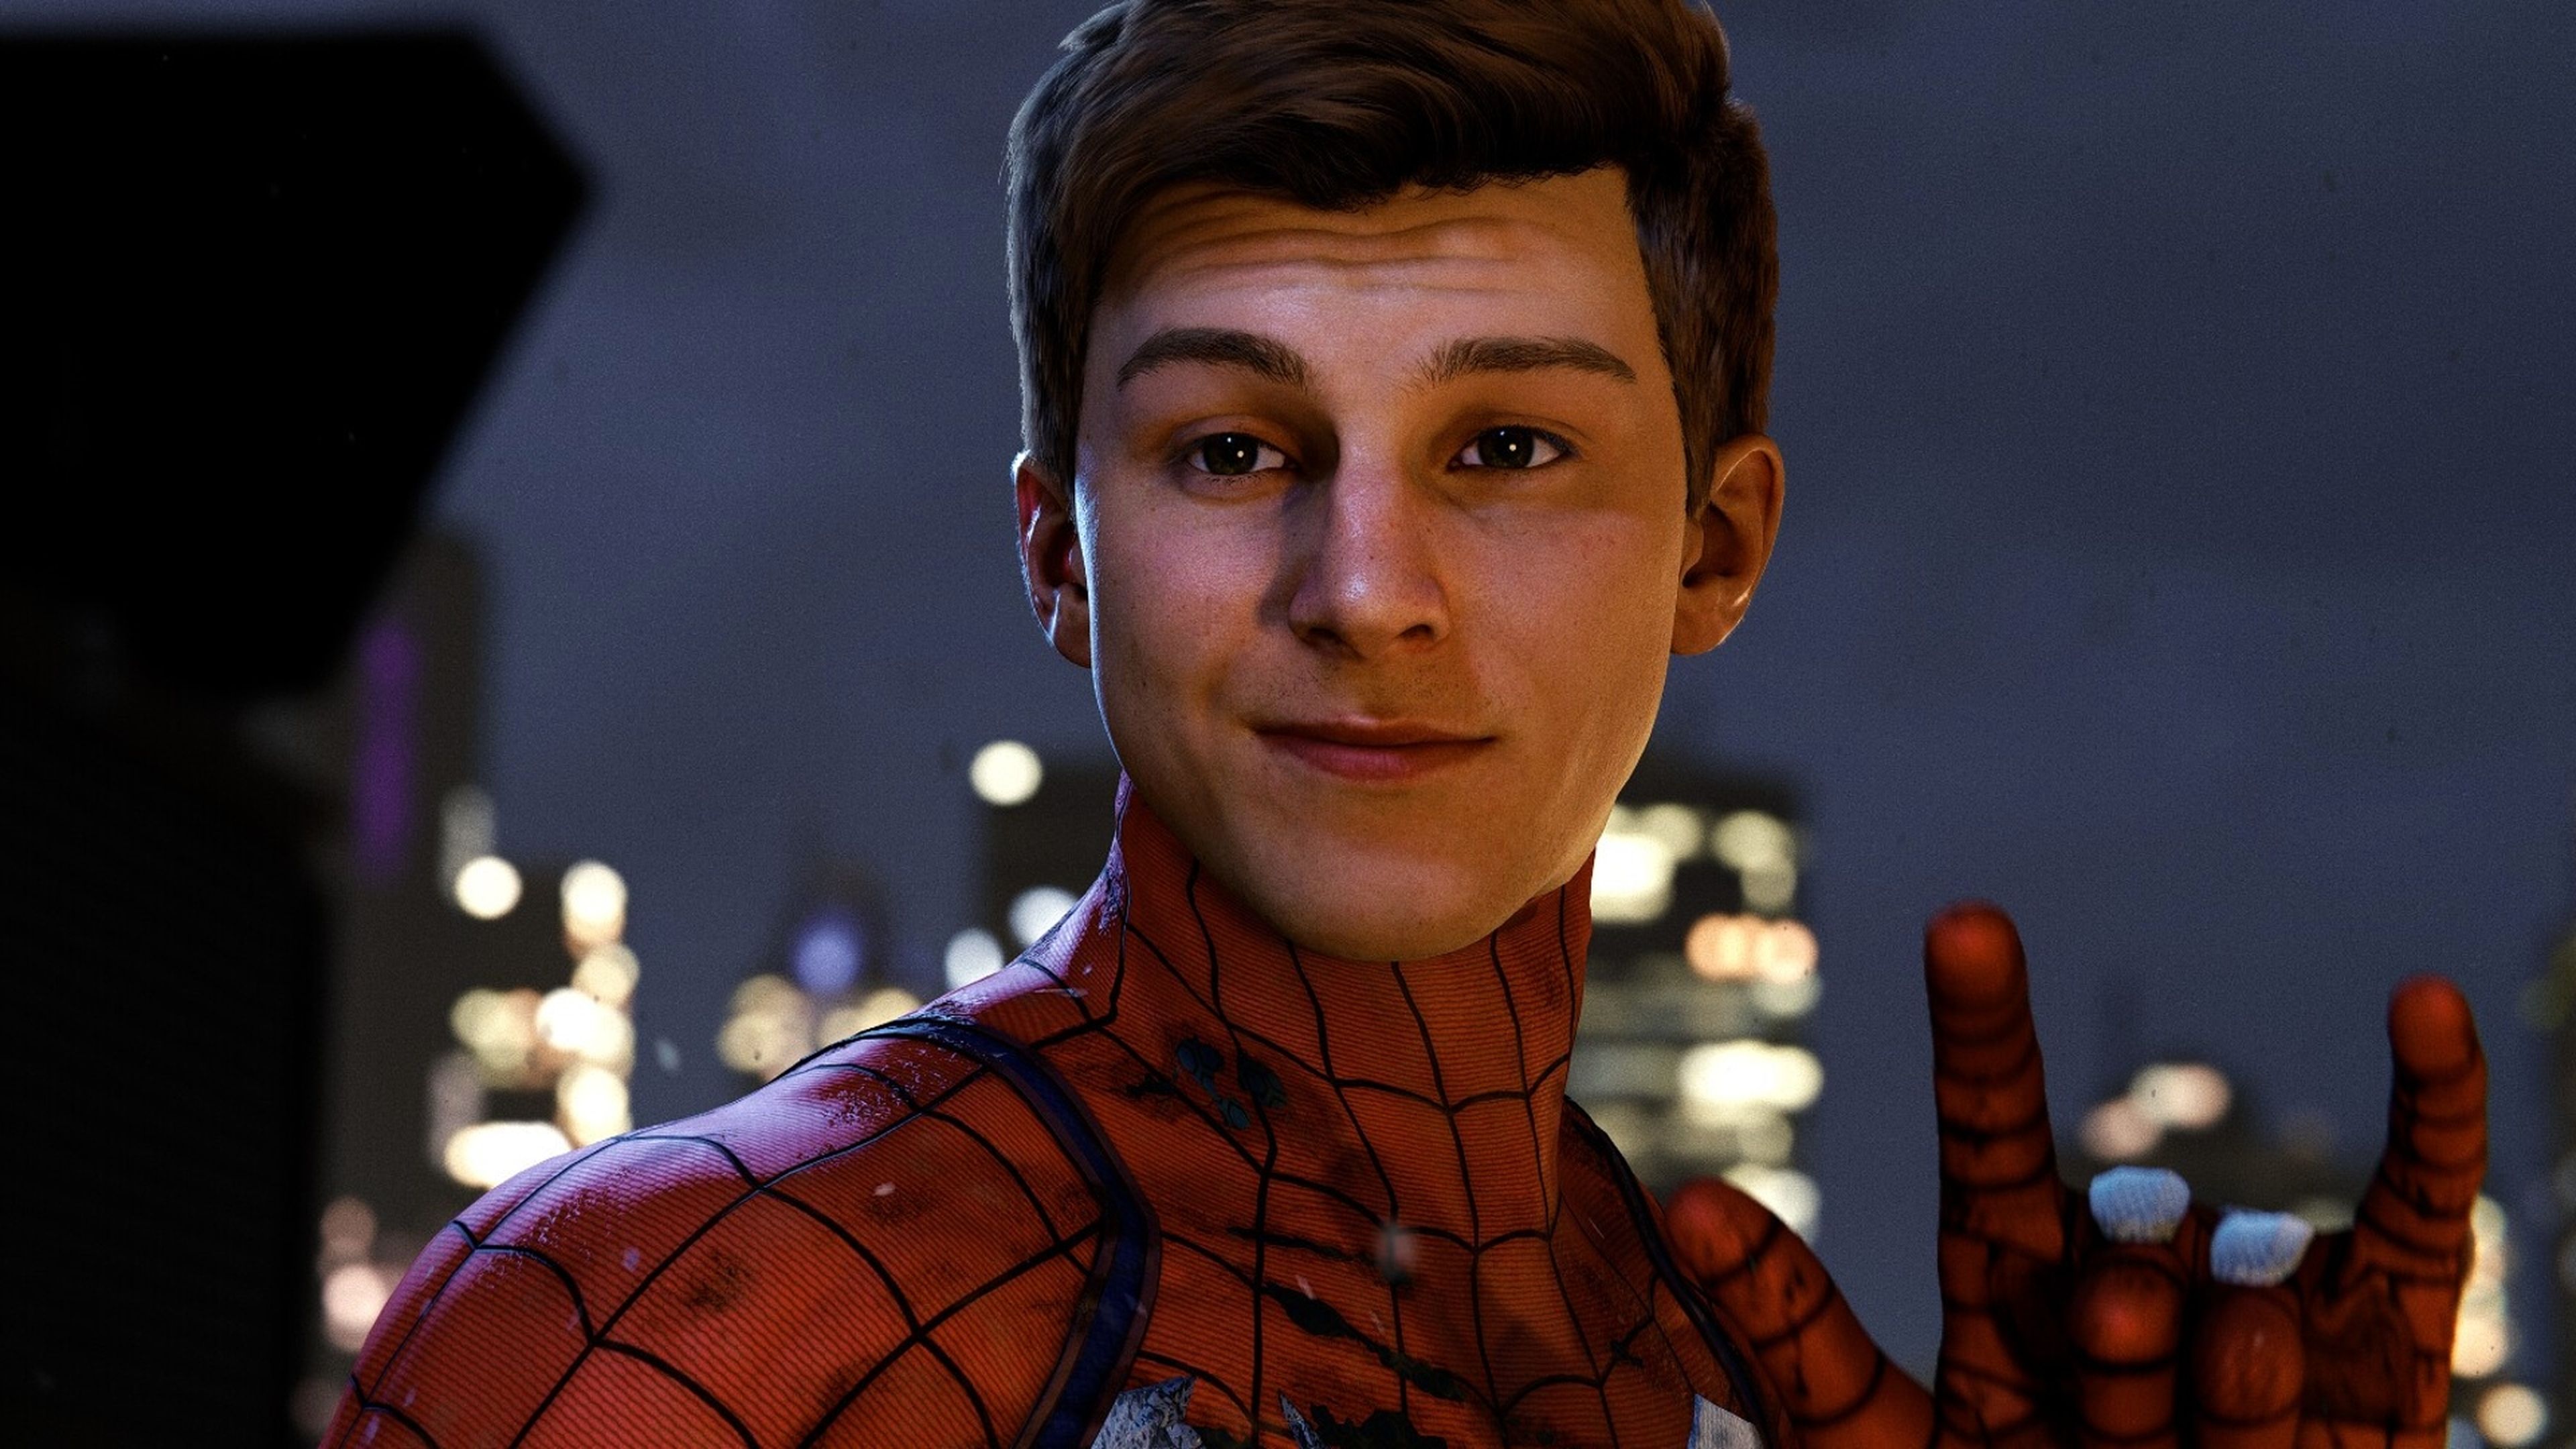 Spider-Man Peter Parker